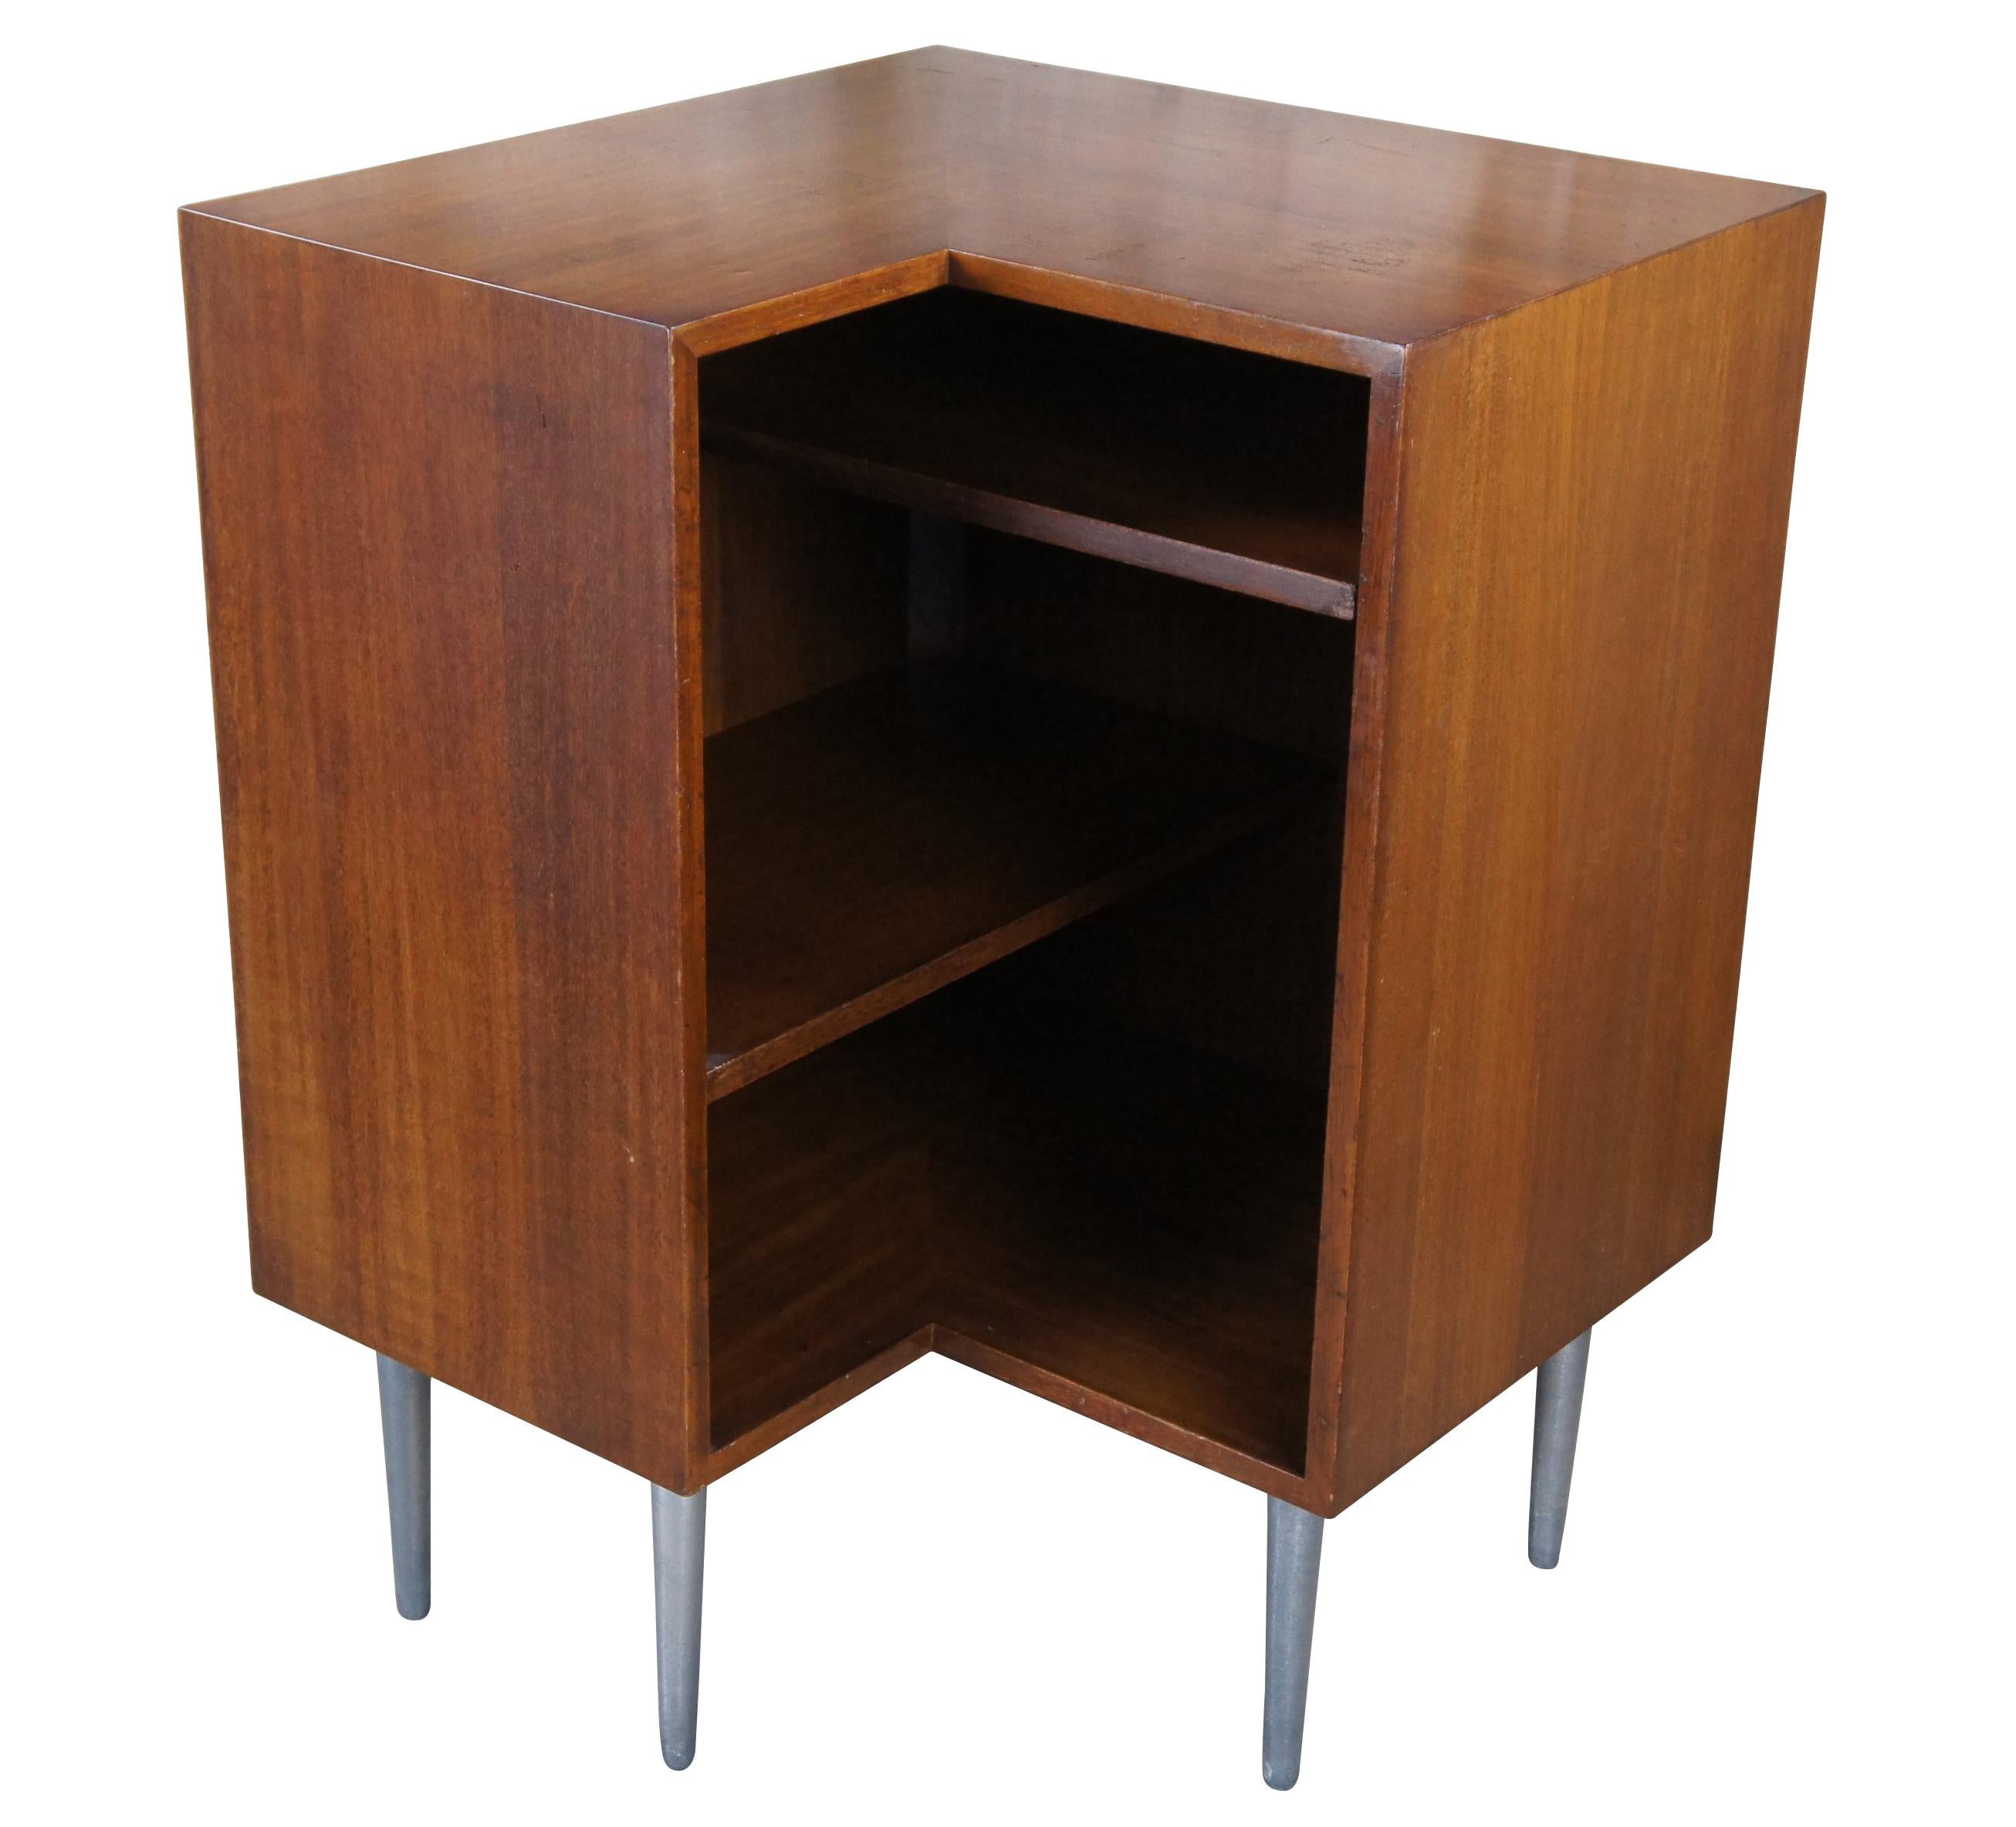 Mid century modern Edward Wormley for Dunbar Furniture Eckregal Plattenkonsole.  Aus Nussbaumholz in modularer, kubistischer L-Form mit fünf spitz zulaufenden Metallbeinen.

Dunbar Furniture wurde 1910 gegründet und hat sich einen guten Ruf als